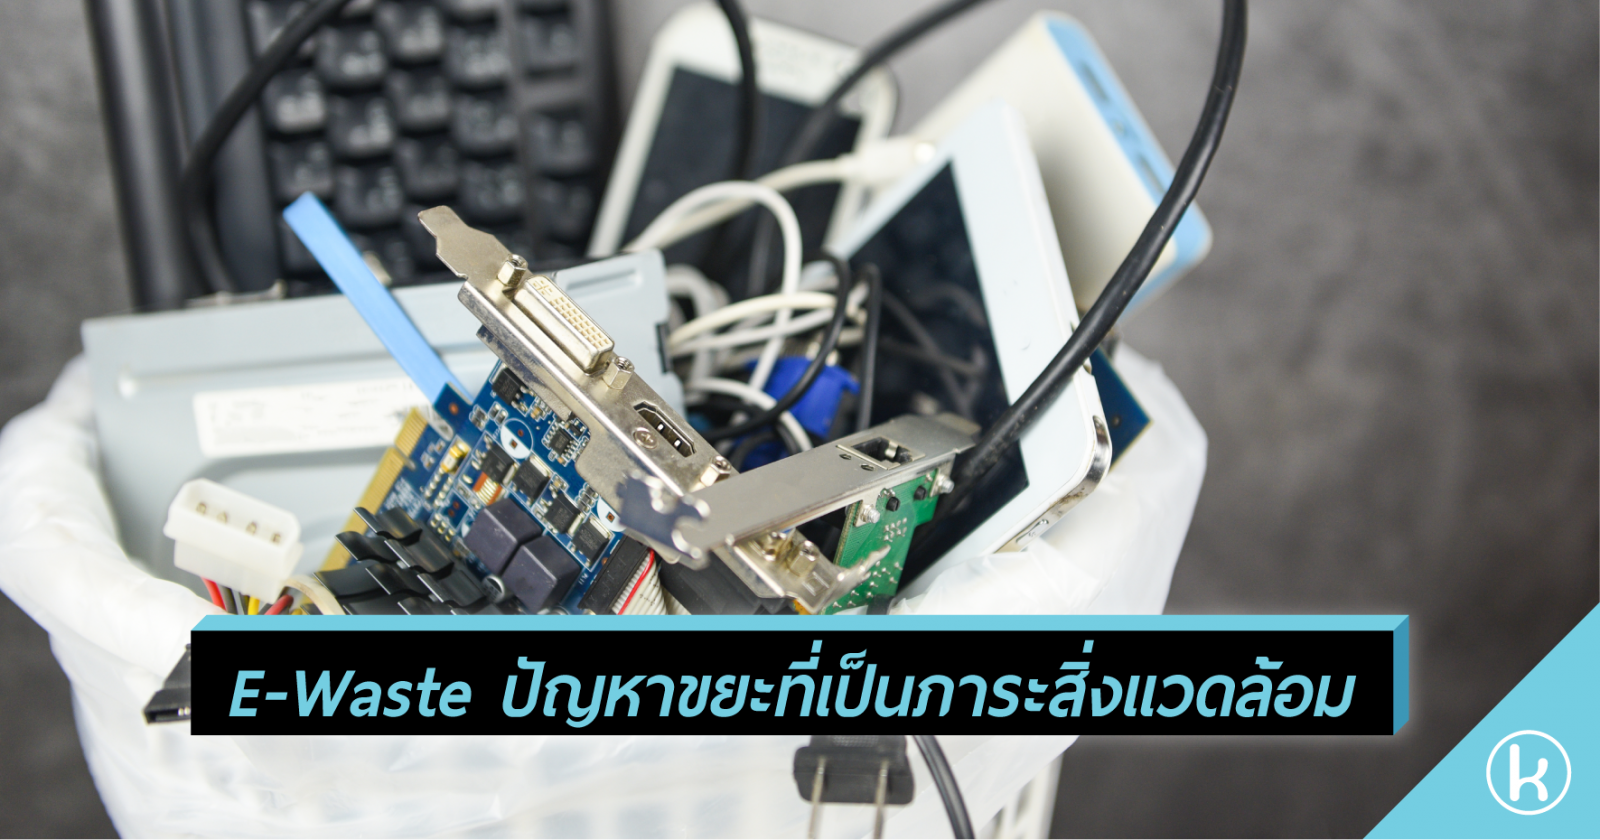 E-Waste ปัญหาขยะที่เป็นภาระสิ่งแวดล้อม